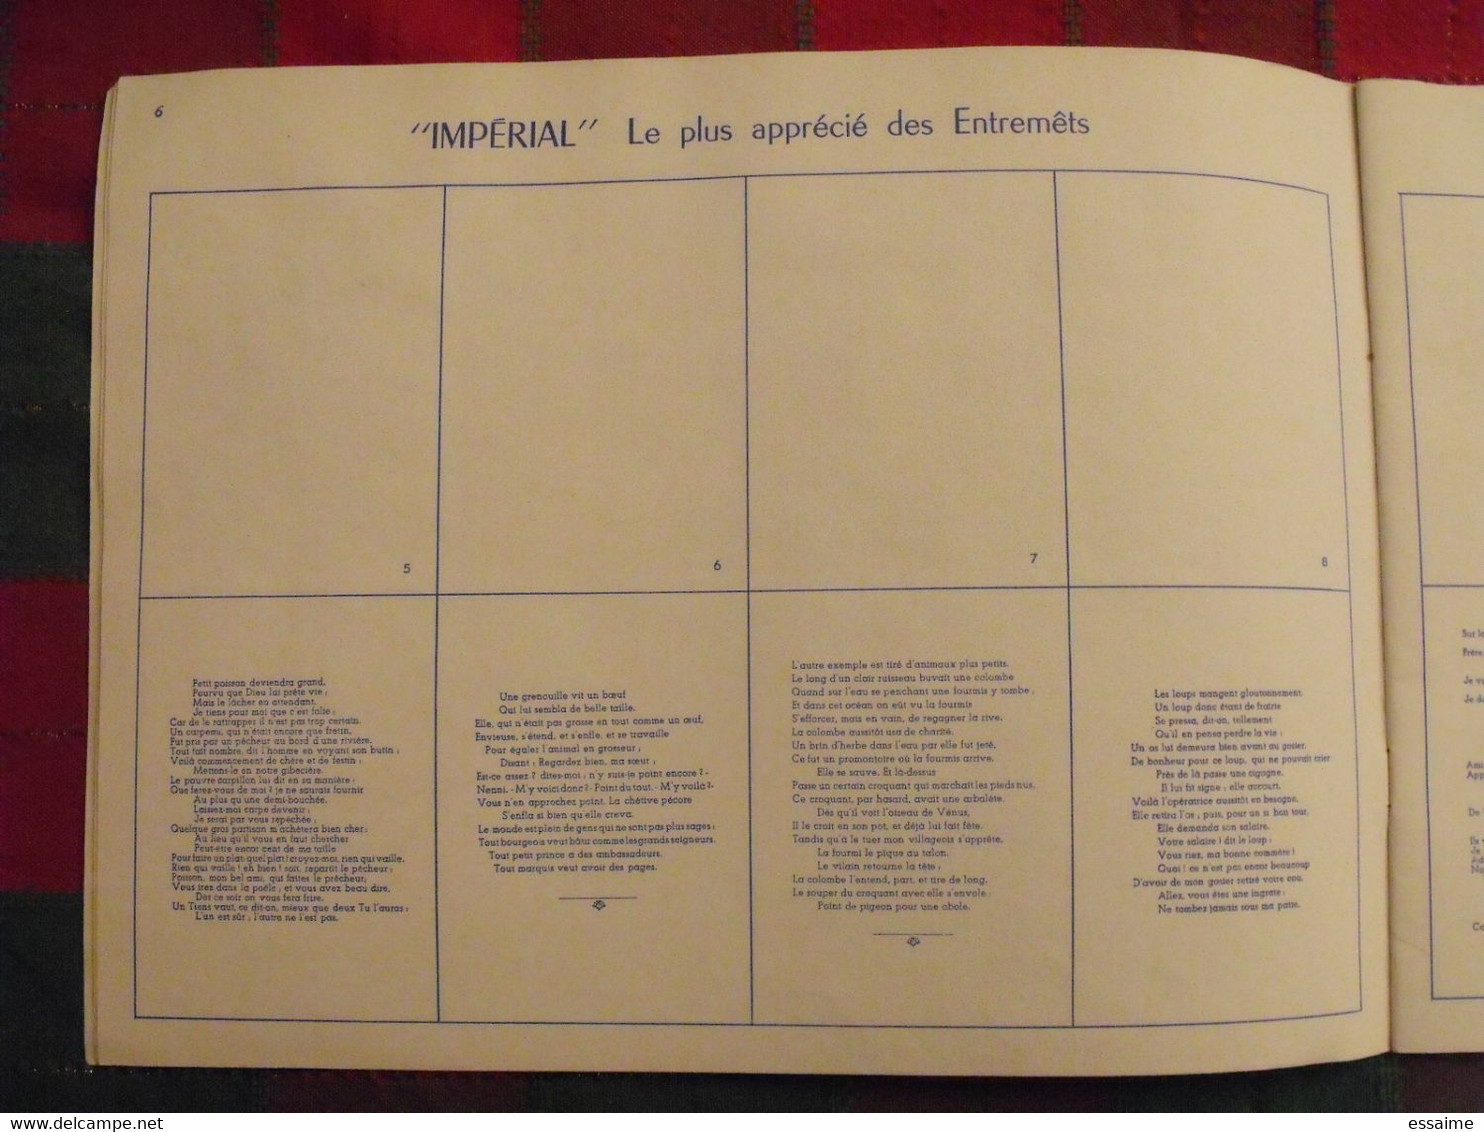 album d'images Fables de La Fontaine. flan entremets Impérial. contient 32/96 images. vers 1960. lot 2